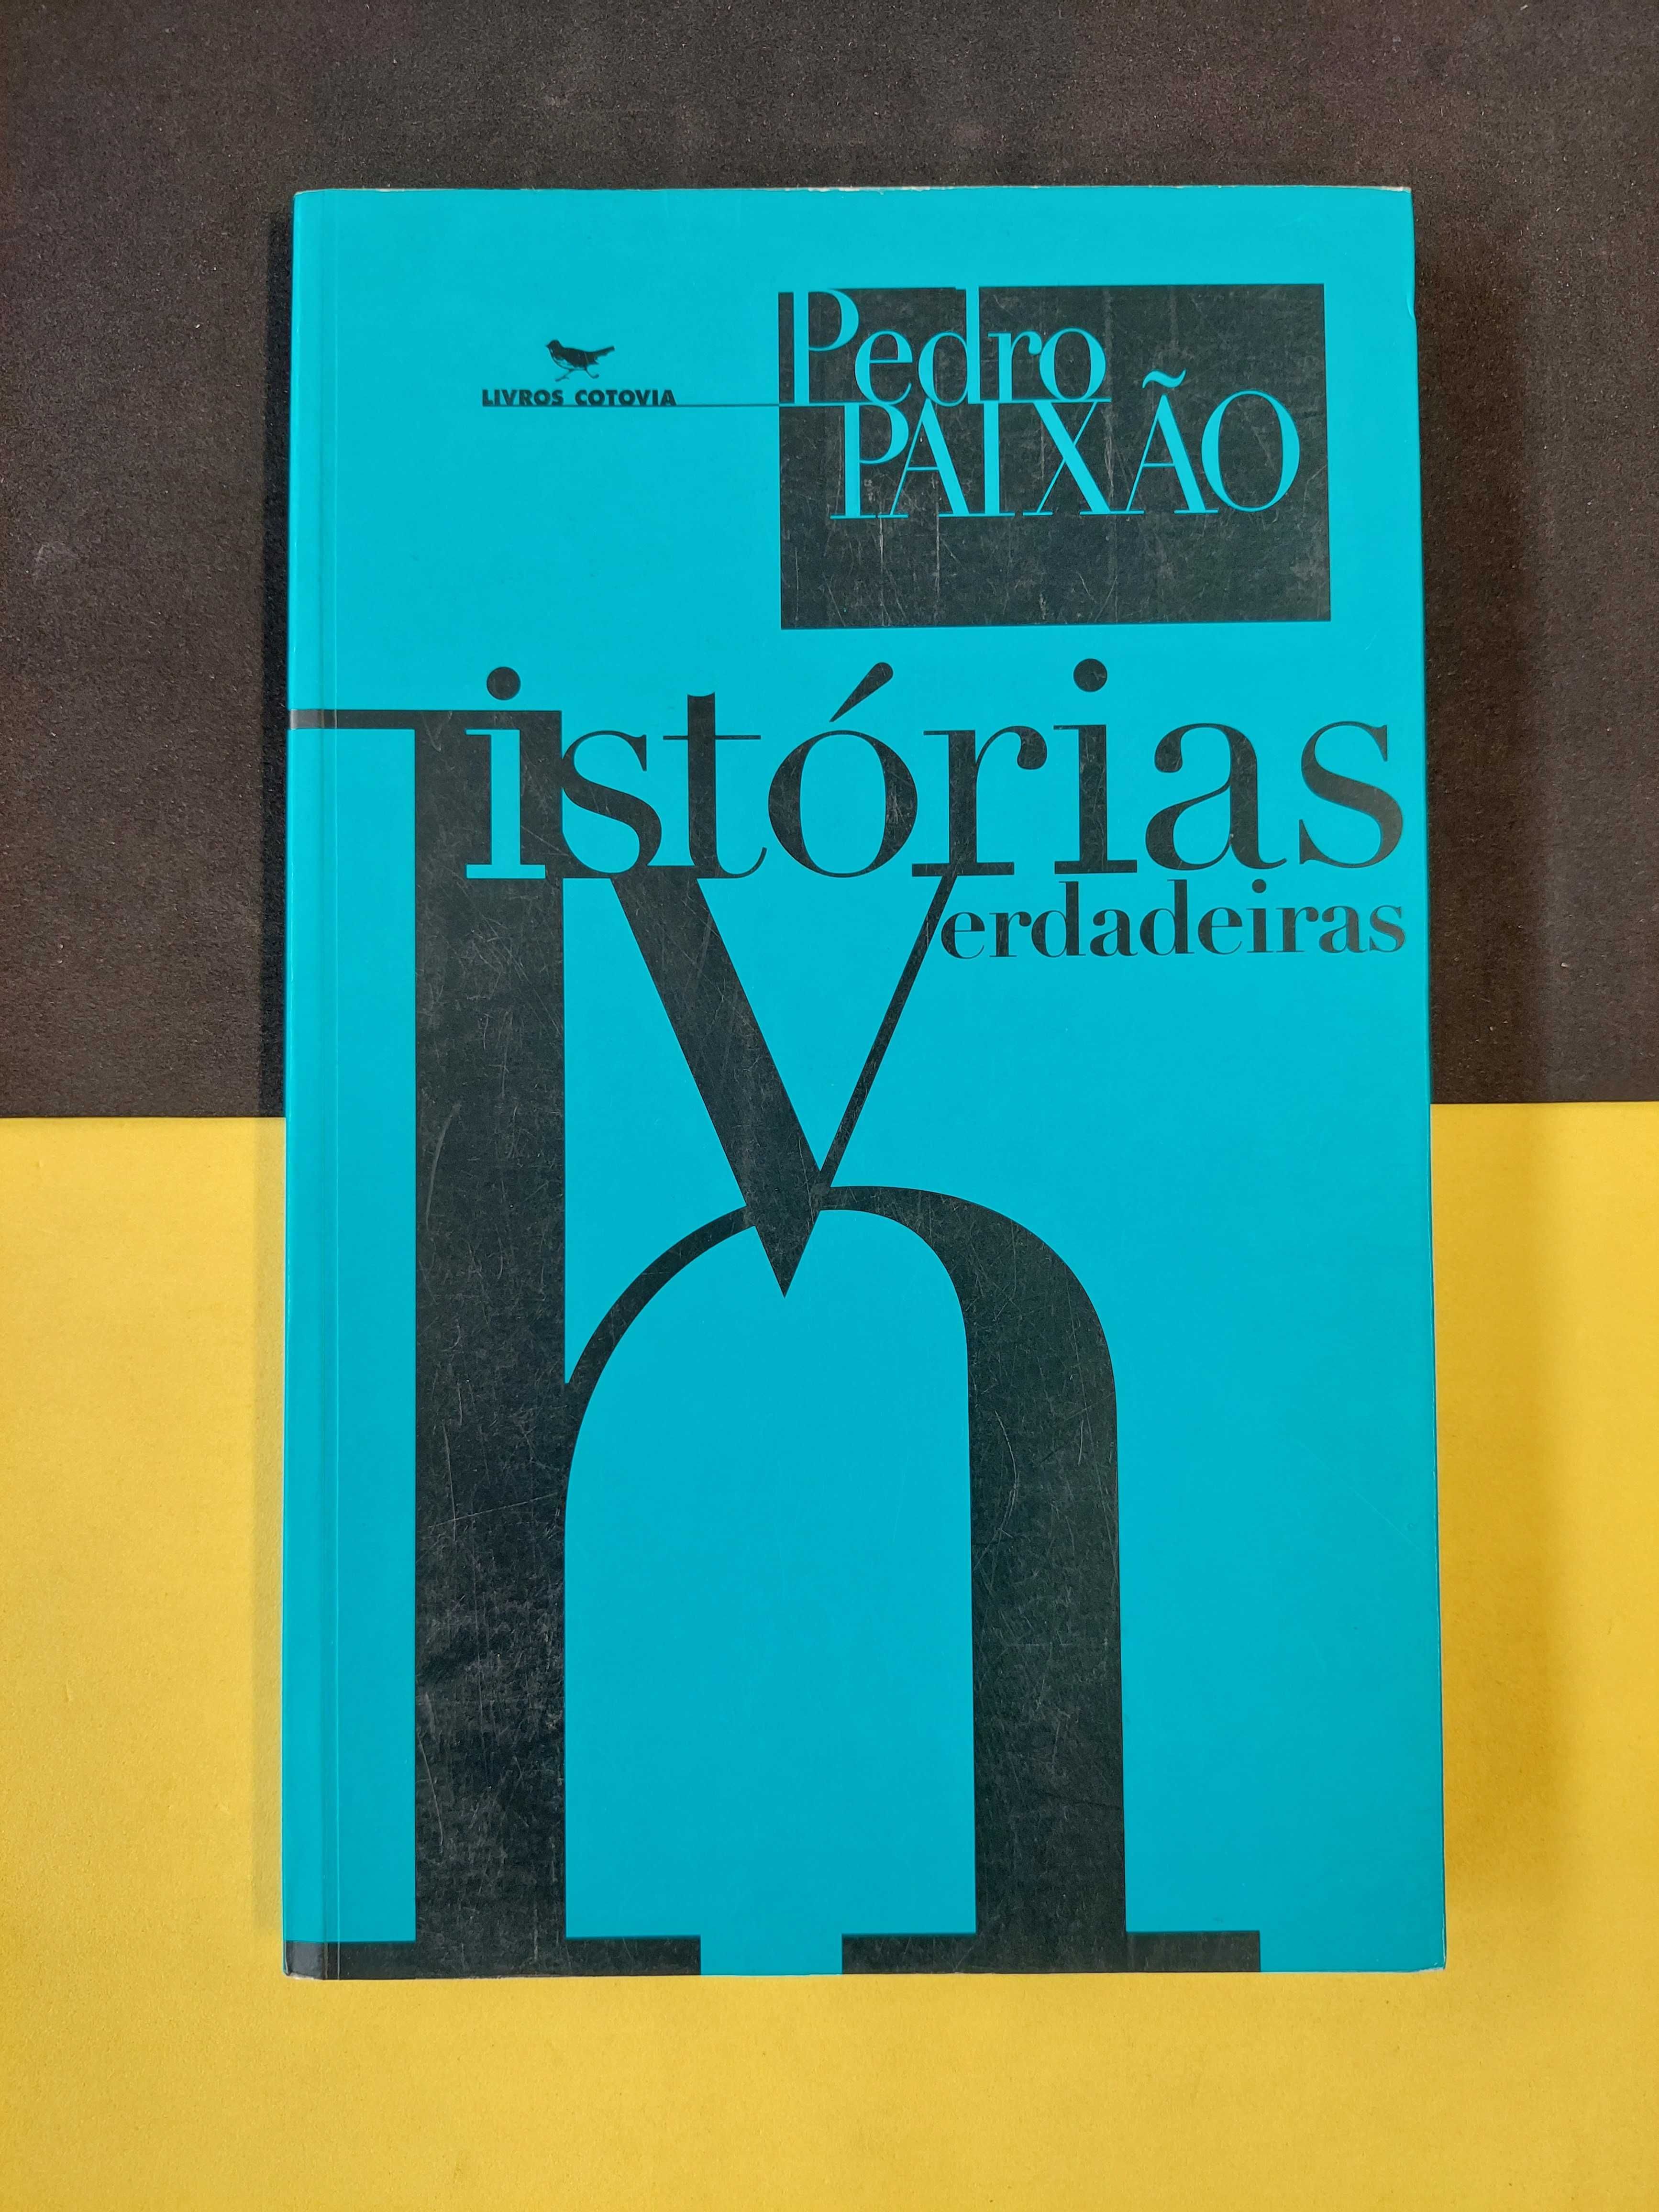 Pedro Paixão - Histórias verdadeiras